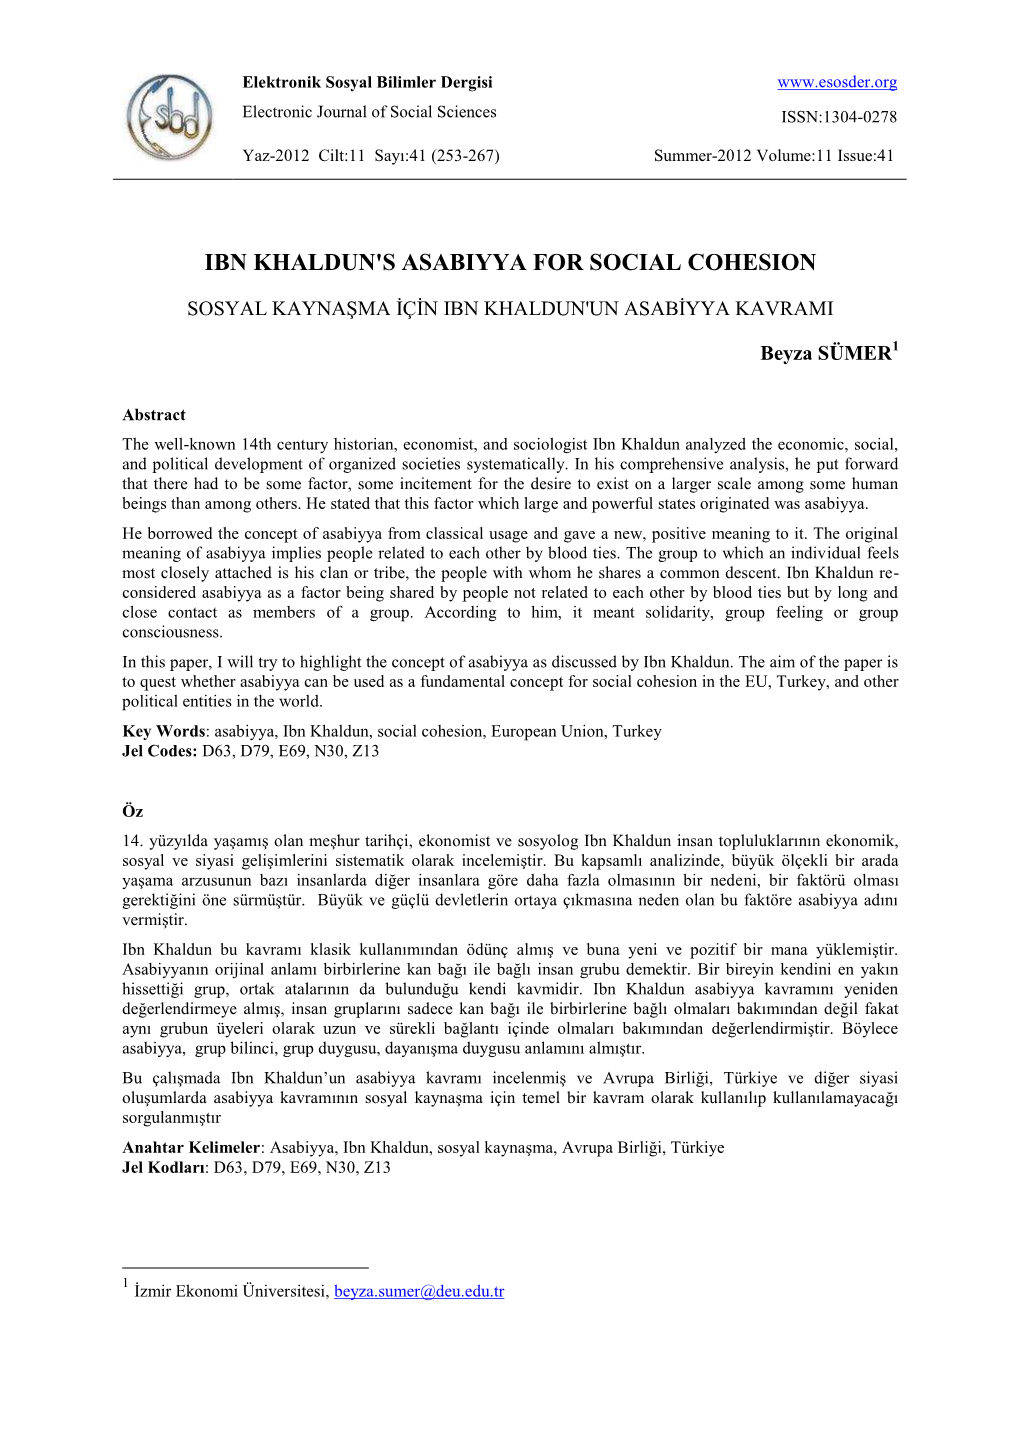 Ibn Khaldun's Asabiyya for Social Cohesion